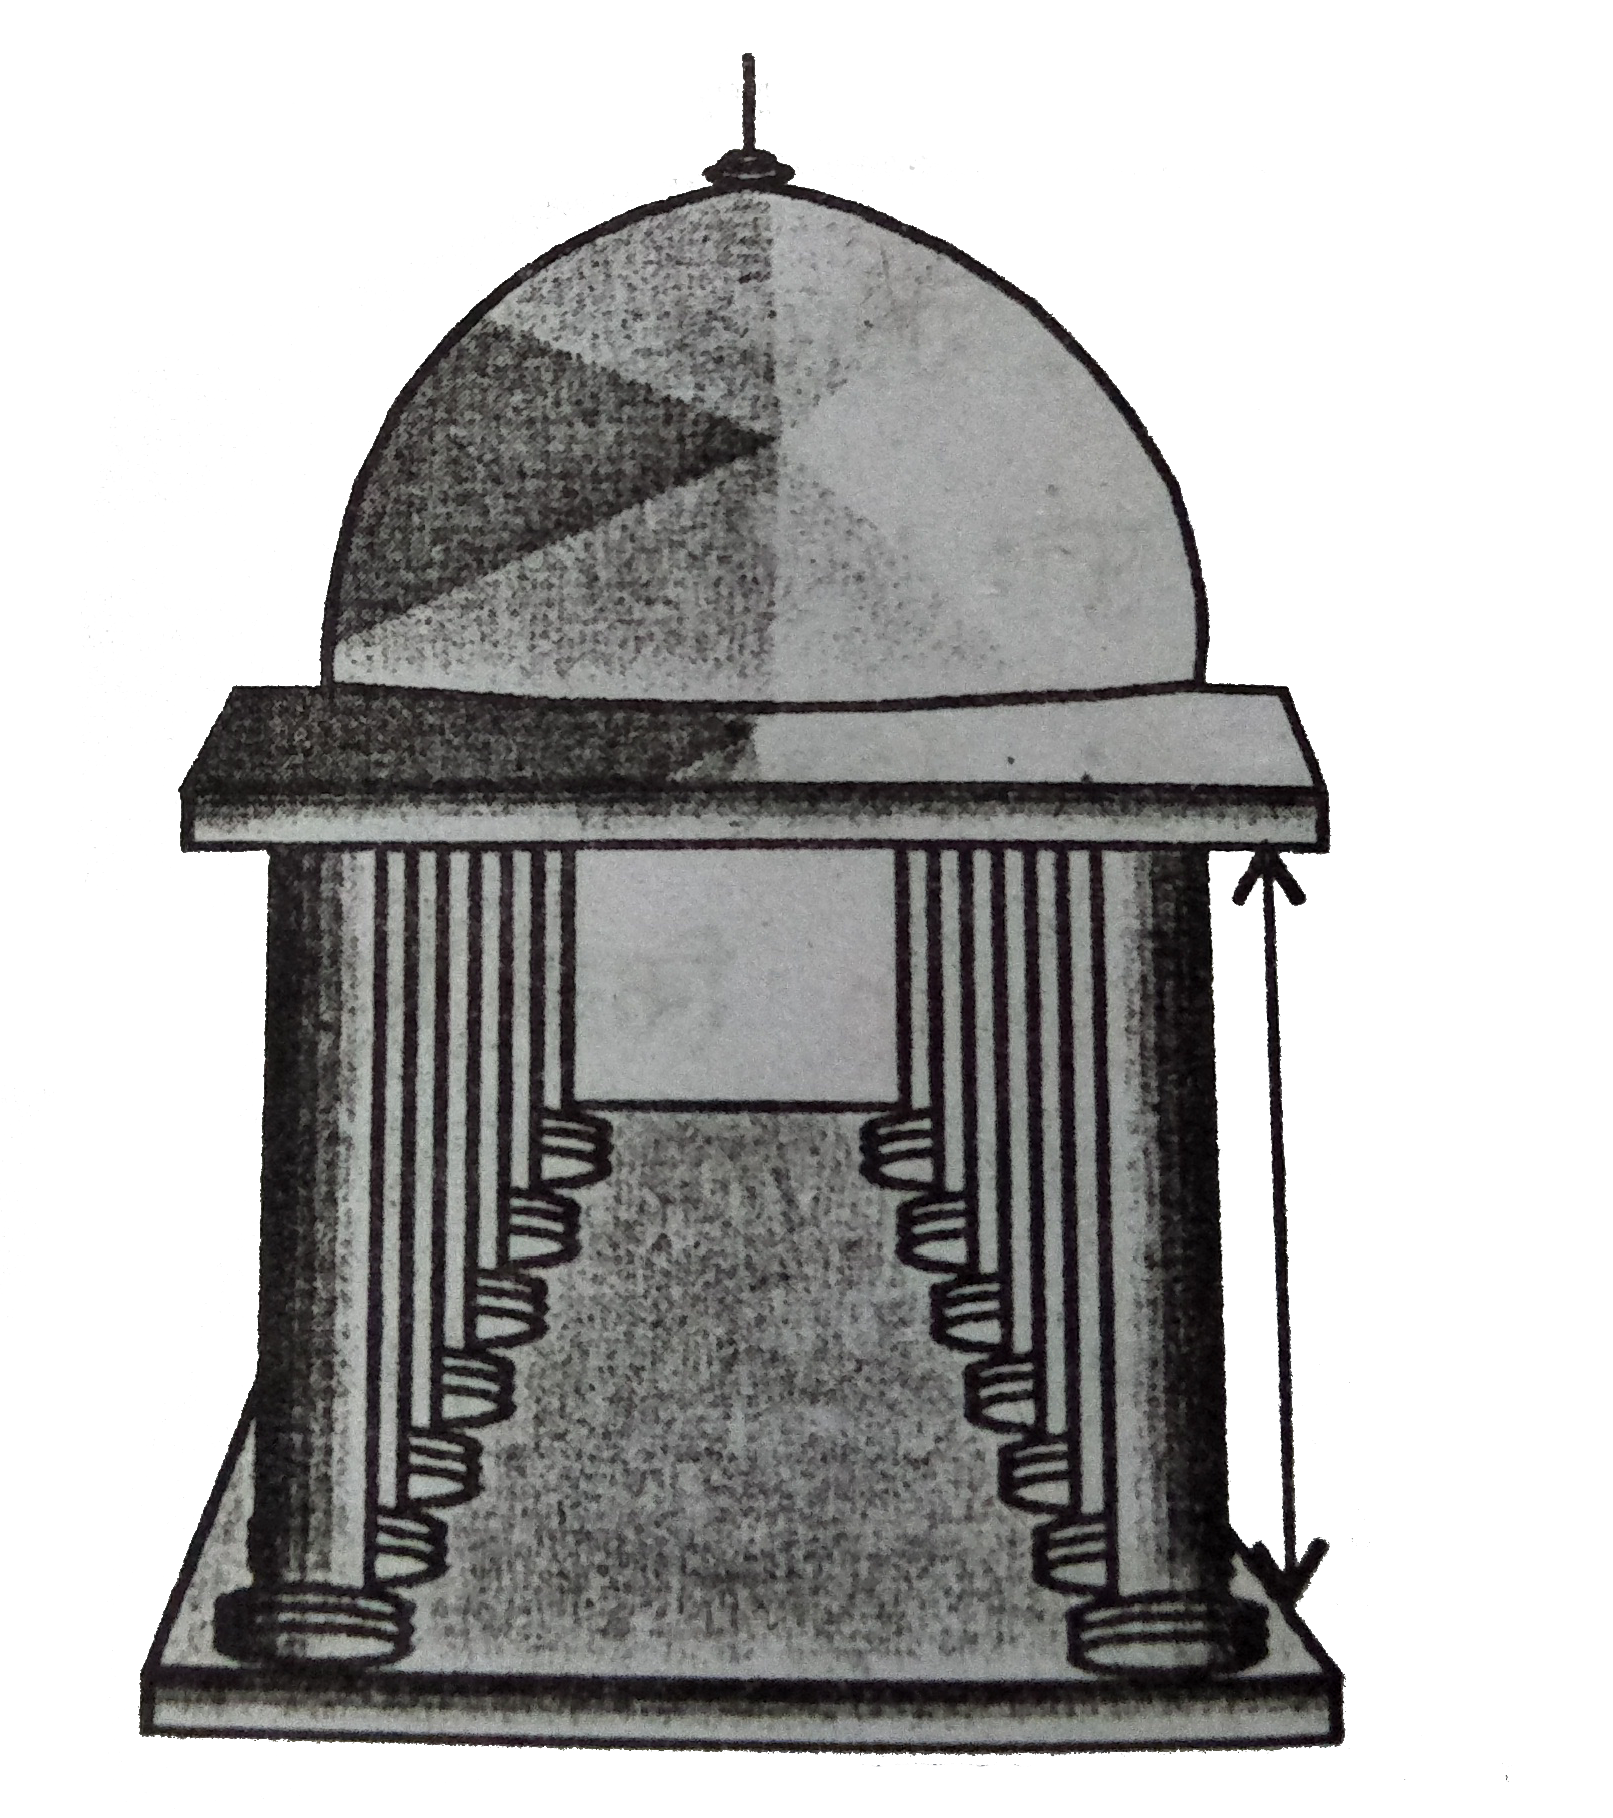 किसी मंदिर के खम्भे बेलनाकार है (देखिये आकृति)| यदि प्रत्येक खम्भे का आधार 20 cm त्रिज्या का का एक   वृत्तीय   क्षेत्र है और ऊंचाई 10 m है तो ऐसे 14 खम्भे बनाने में कितने कंक्रीट मिश्रण की आवश्यकता होगी?